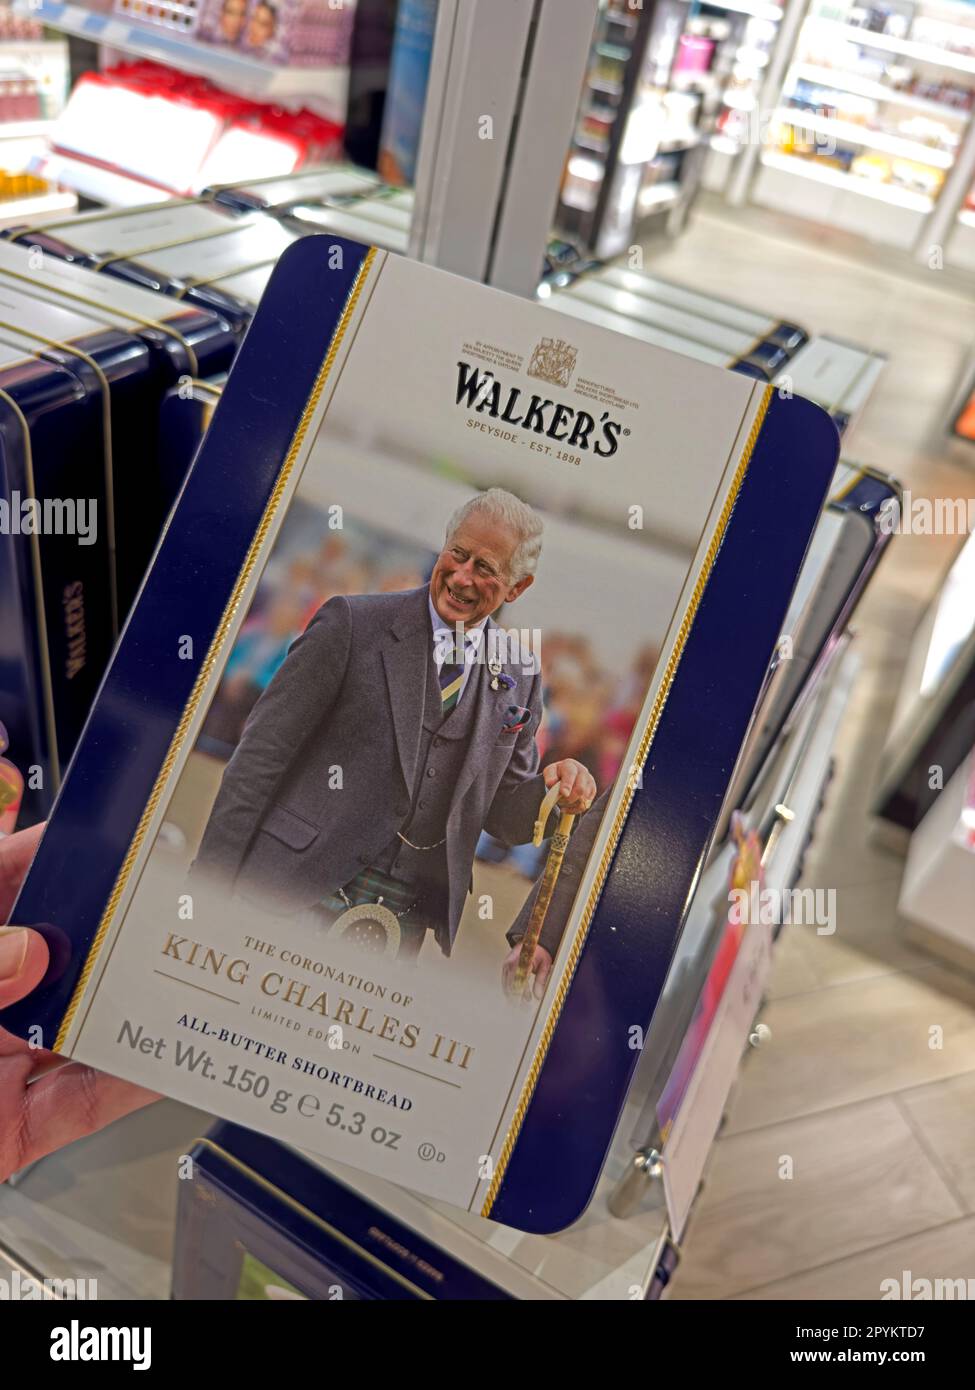 La scatola costosa del re Carlo III Walkers shortbread, aeroporto duty free Foto Stock